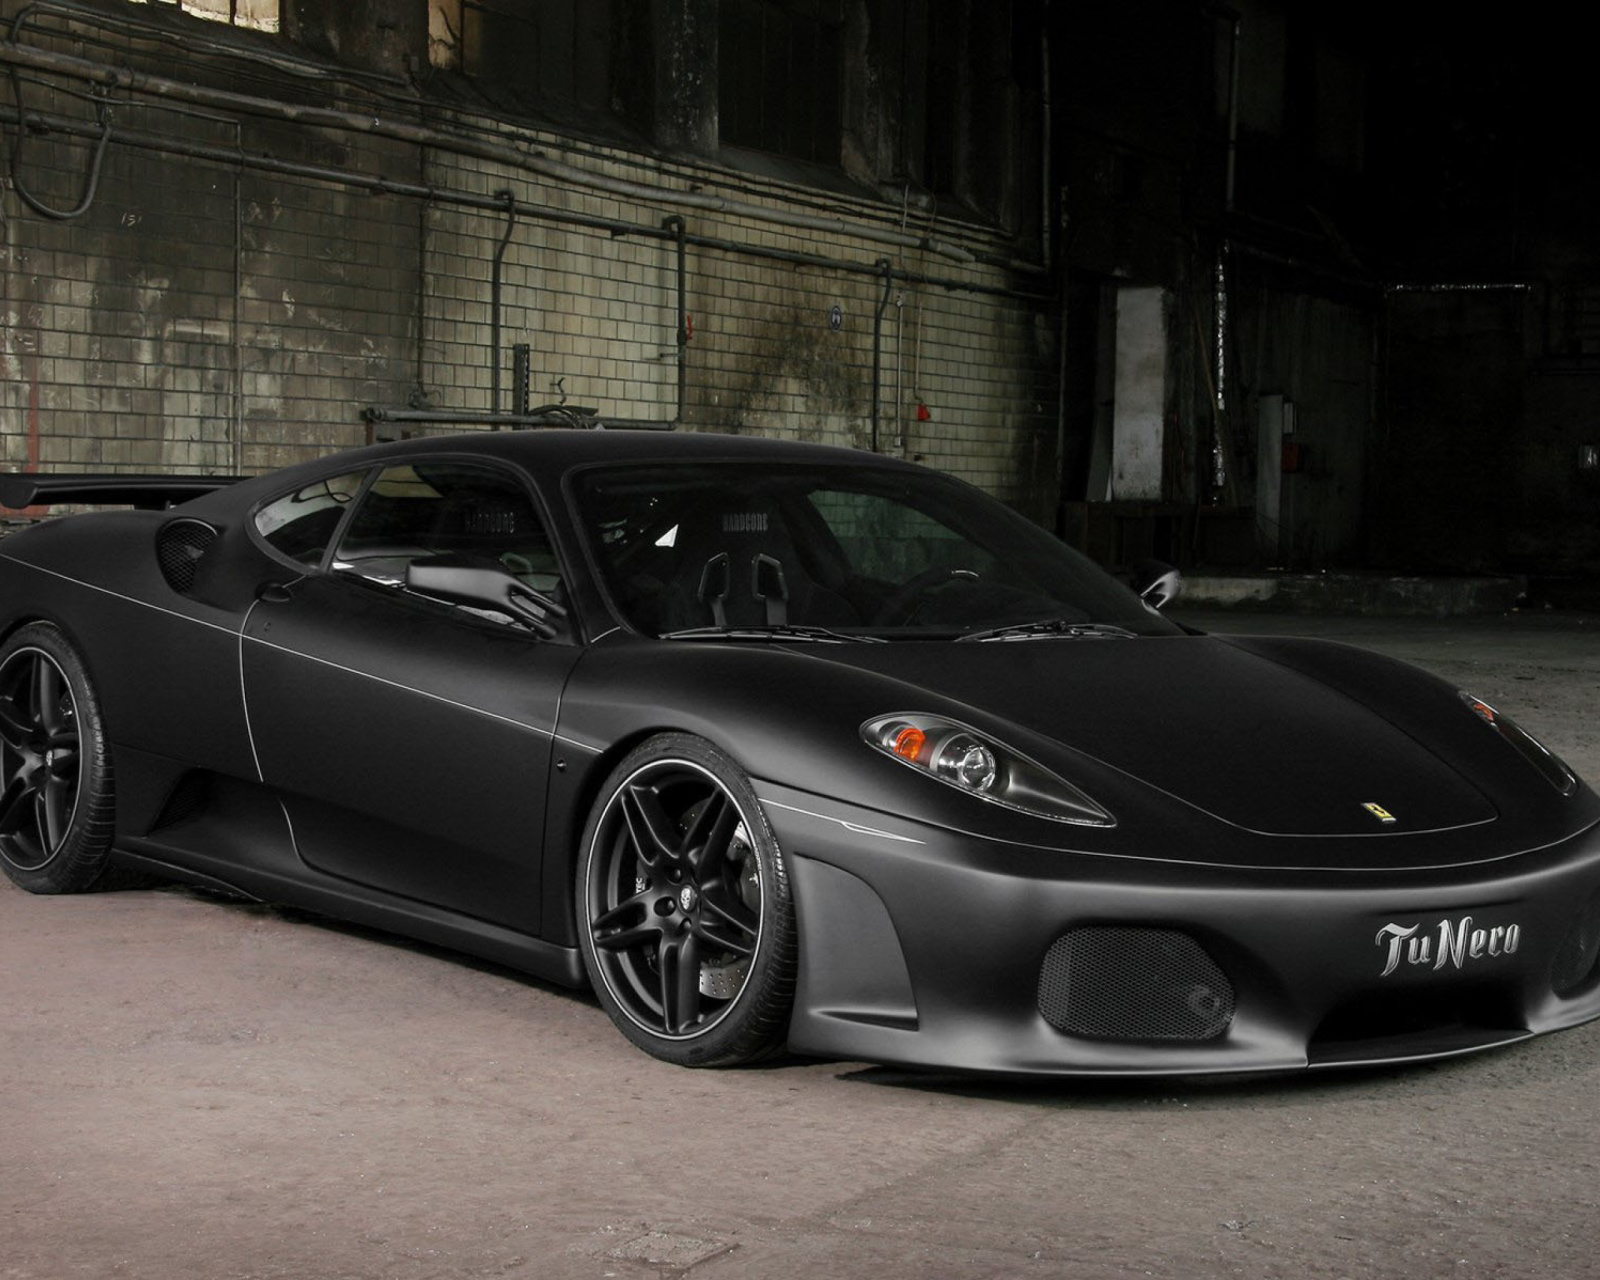 Ferrari F430 Black wallpaper 1600x1280